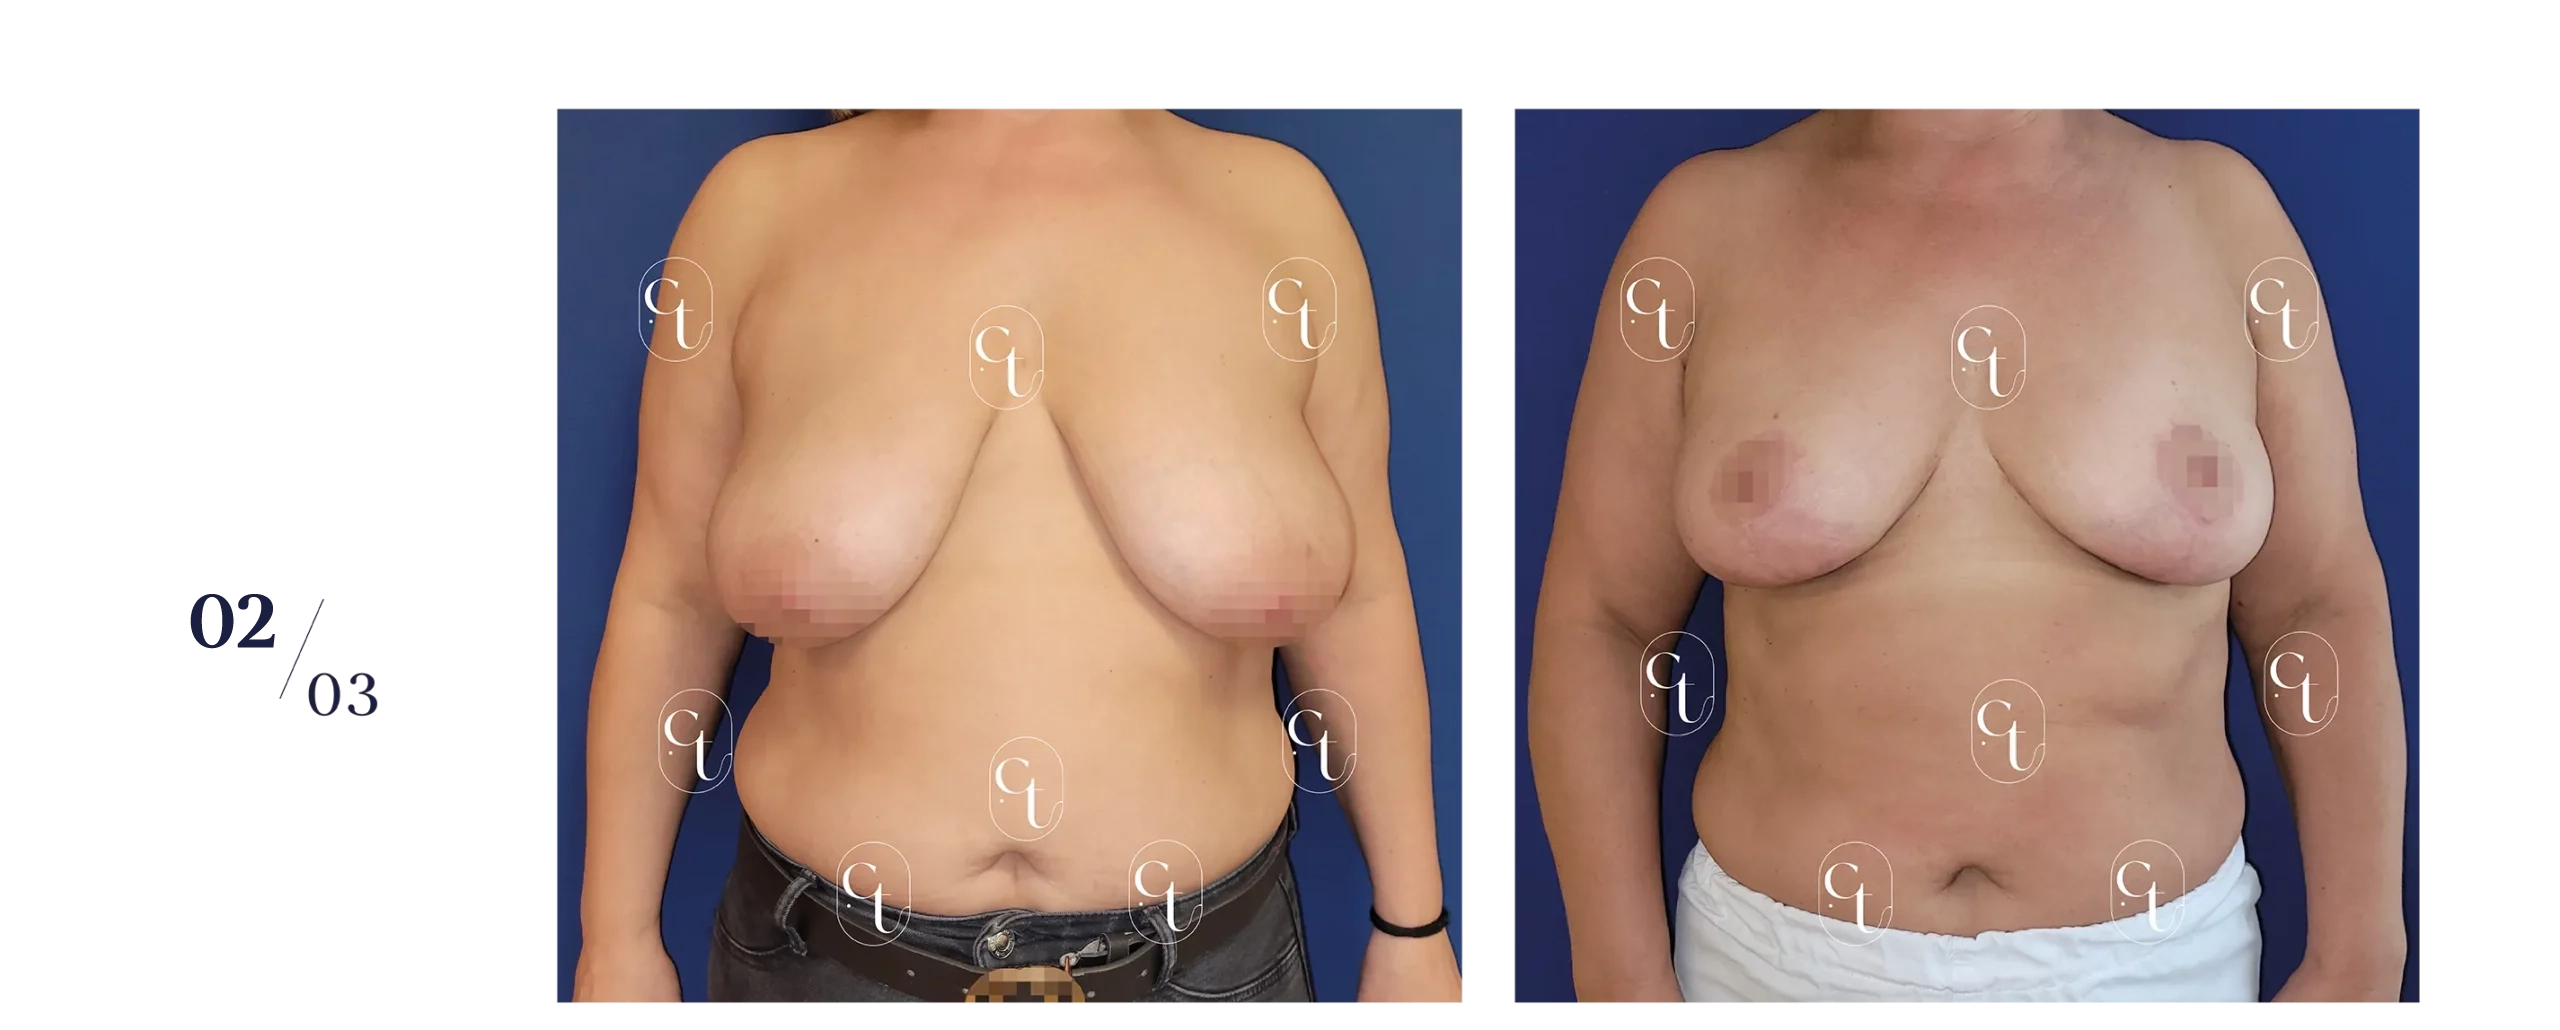 Résultat à 5 mois d'une réduction mammaire bilatérale. Plus de 300 grammes par sein ont été retirés : l'intervention est prise en charge en partie par l'Assurance Maladie.